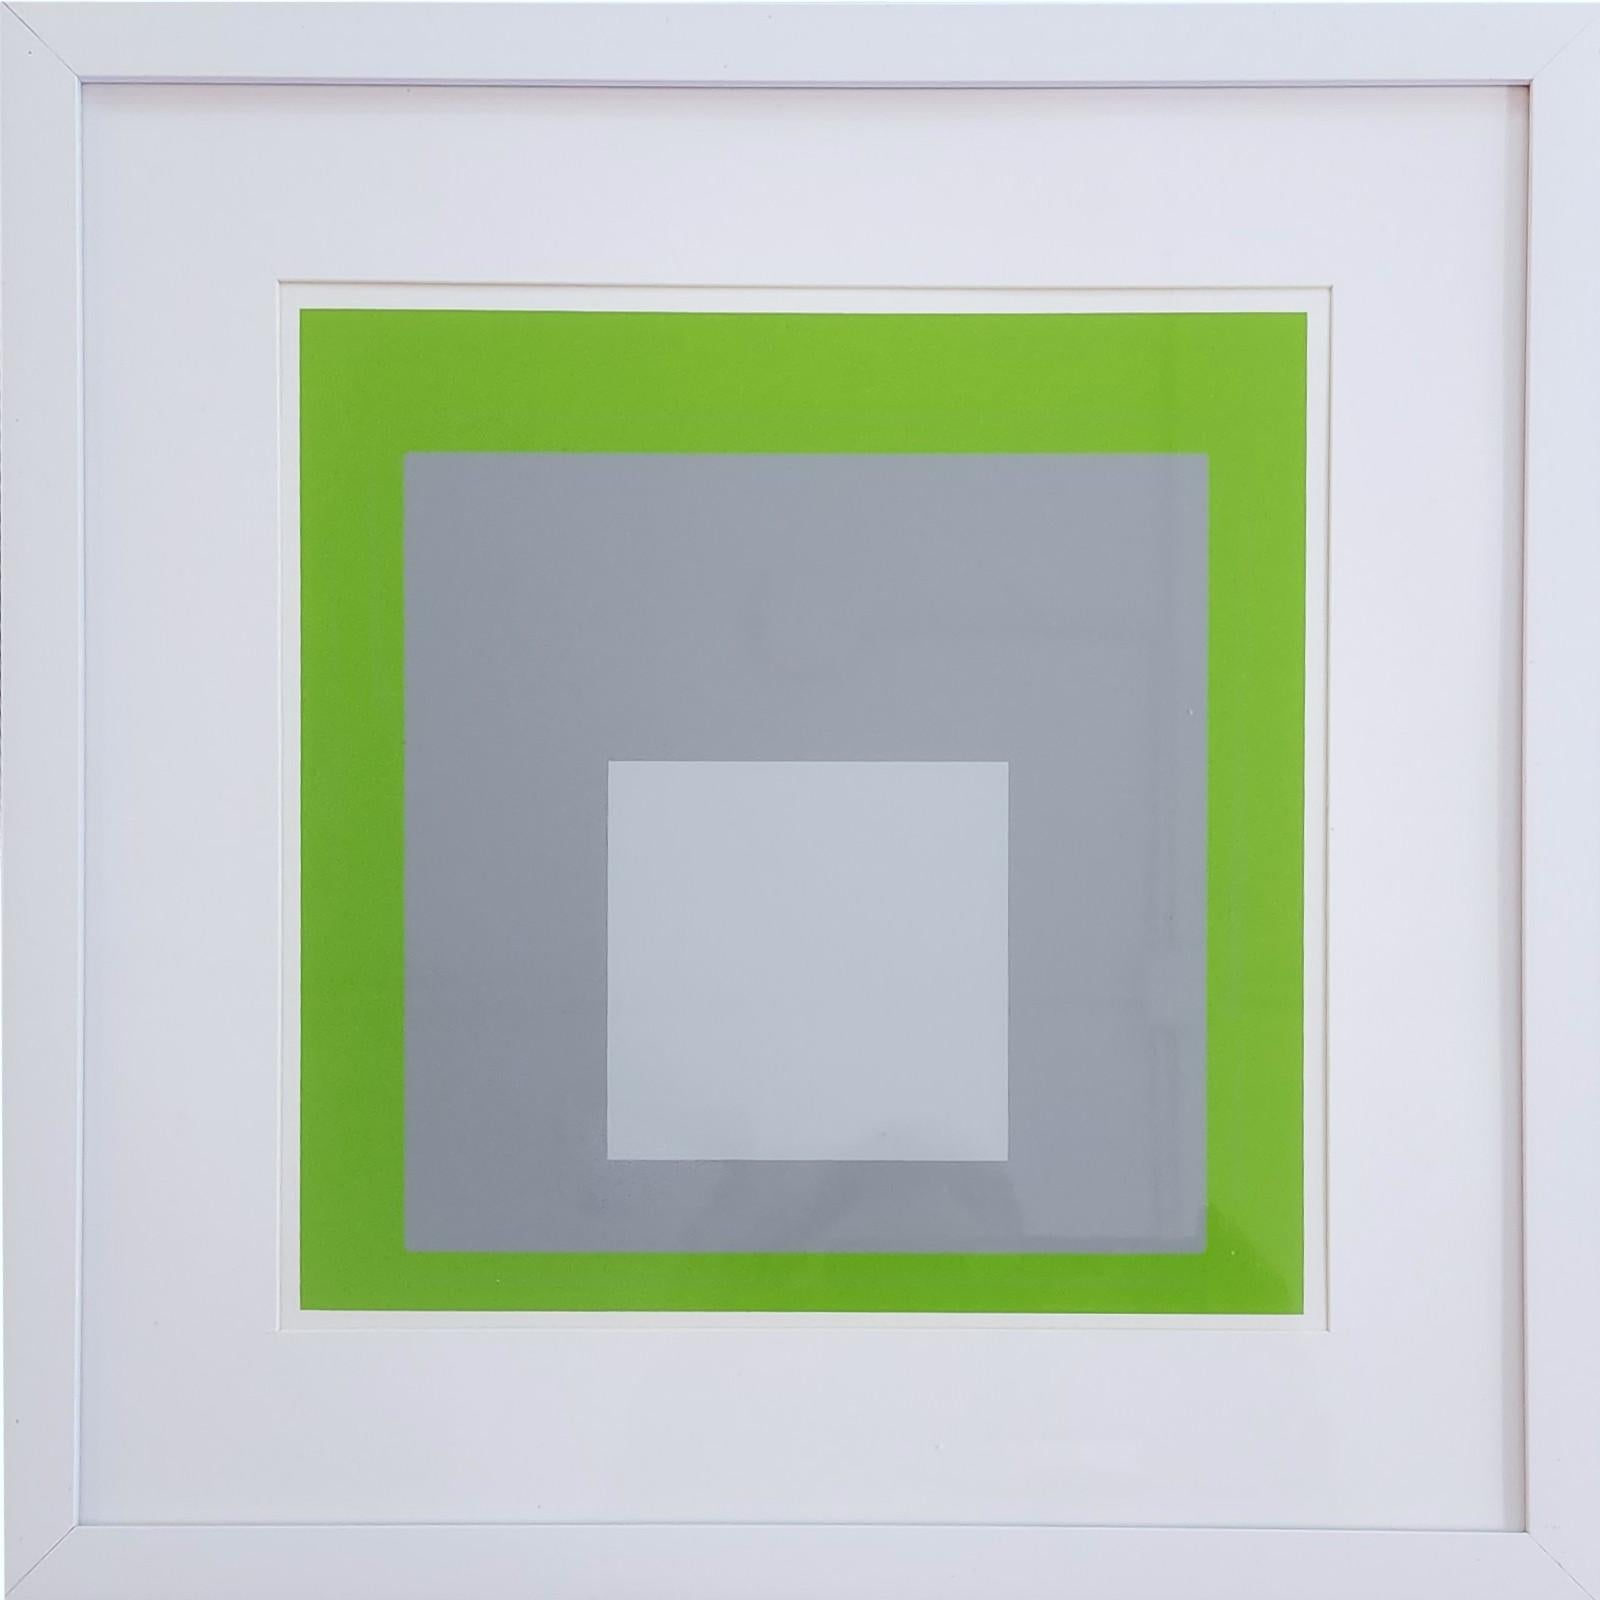 Homage to the Square: White Marker (Bauhaus, Minimalismus, 50% OFF LIST PRICE) (Minimalistisch), Print, von (after) Josef Albers